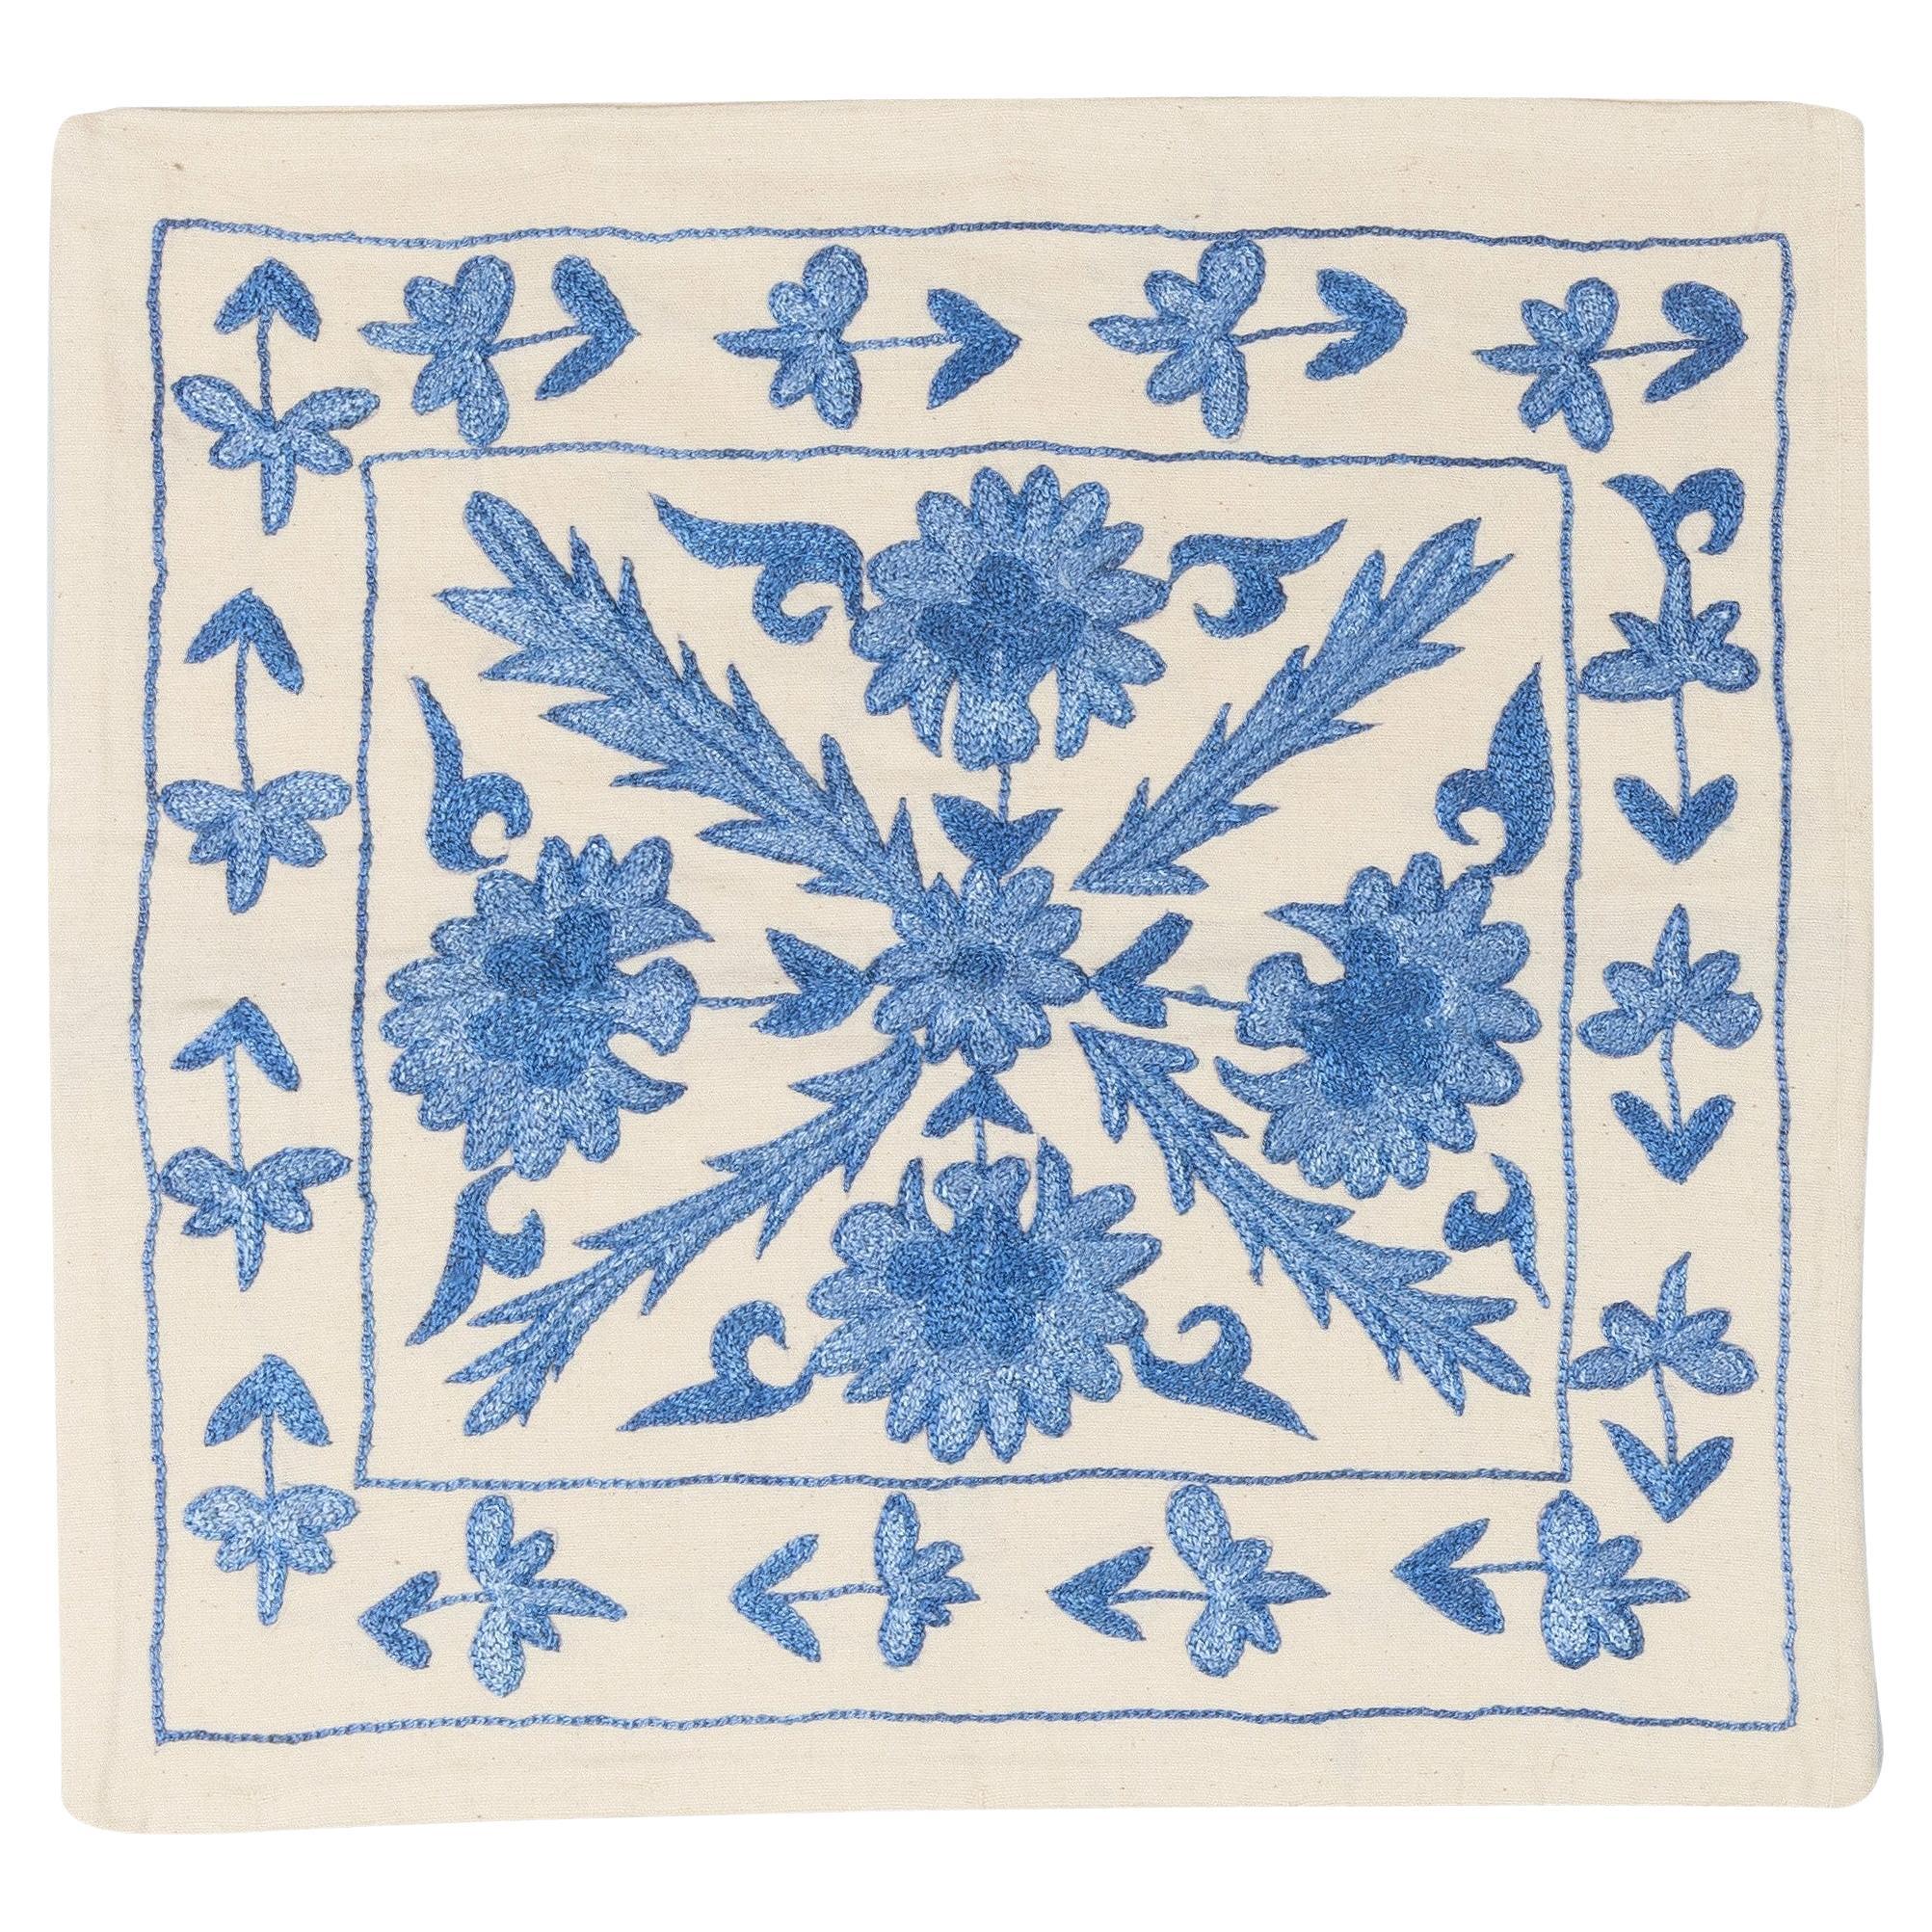 19. Zoll x 19 Zoll Floral gemusterte Seide bestickte Suzani-Kissenhülle in Blau und Creme